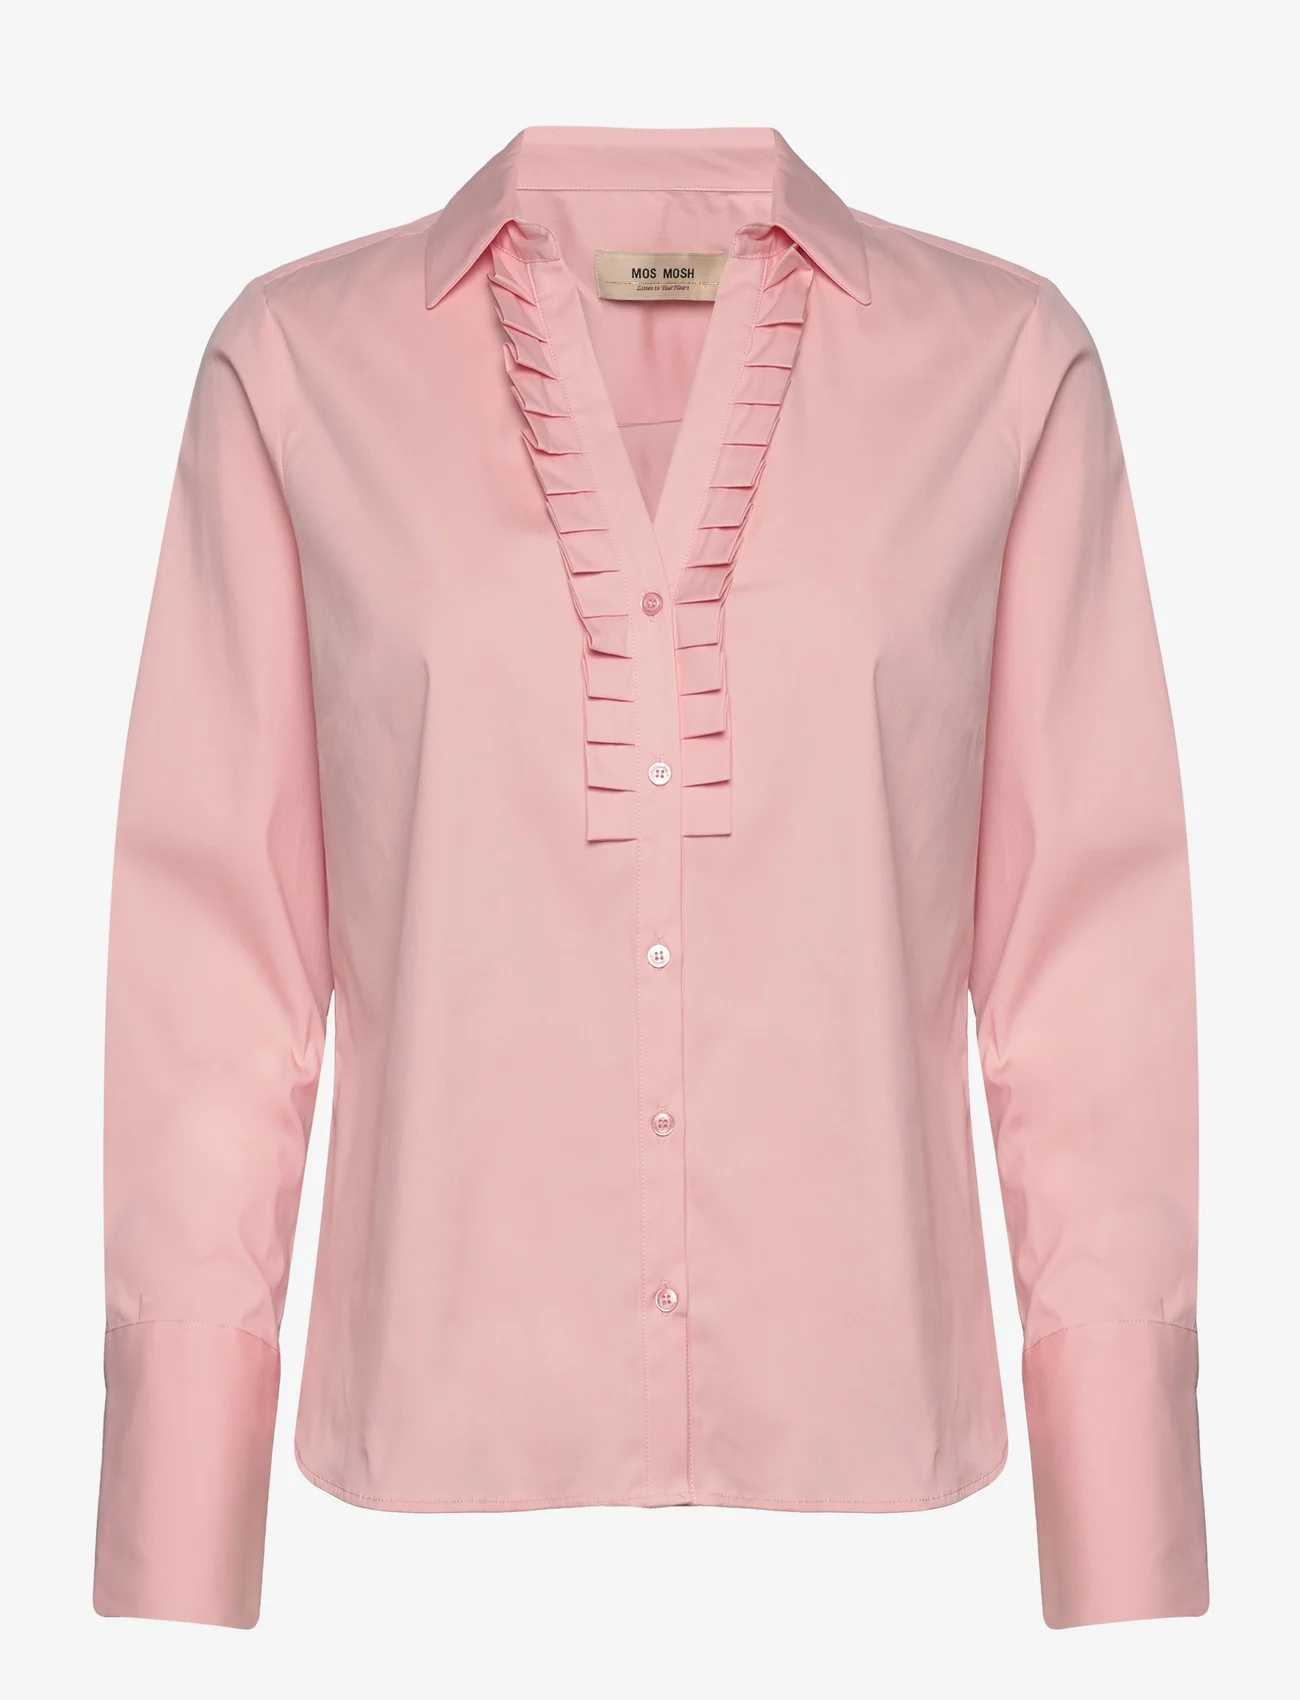 MOS MOSH - Sybel LS Shirt - long-sleeved shirts - silver pink - 0